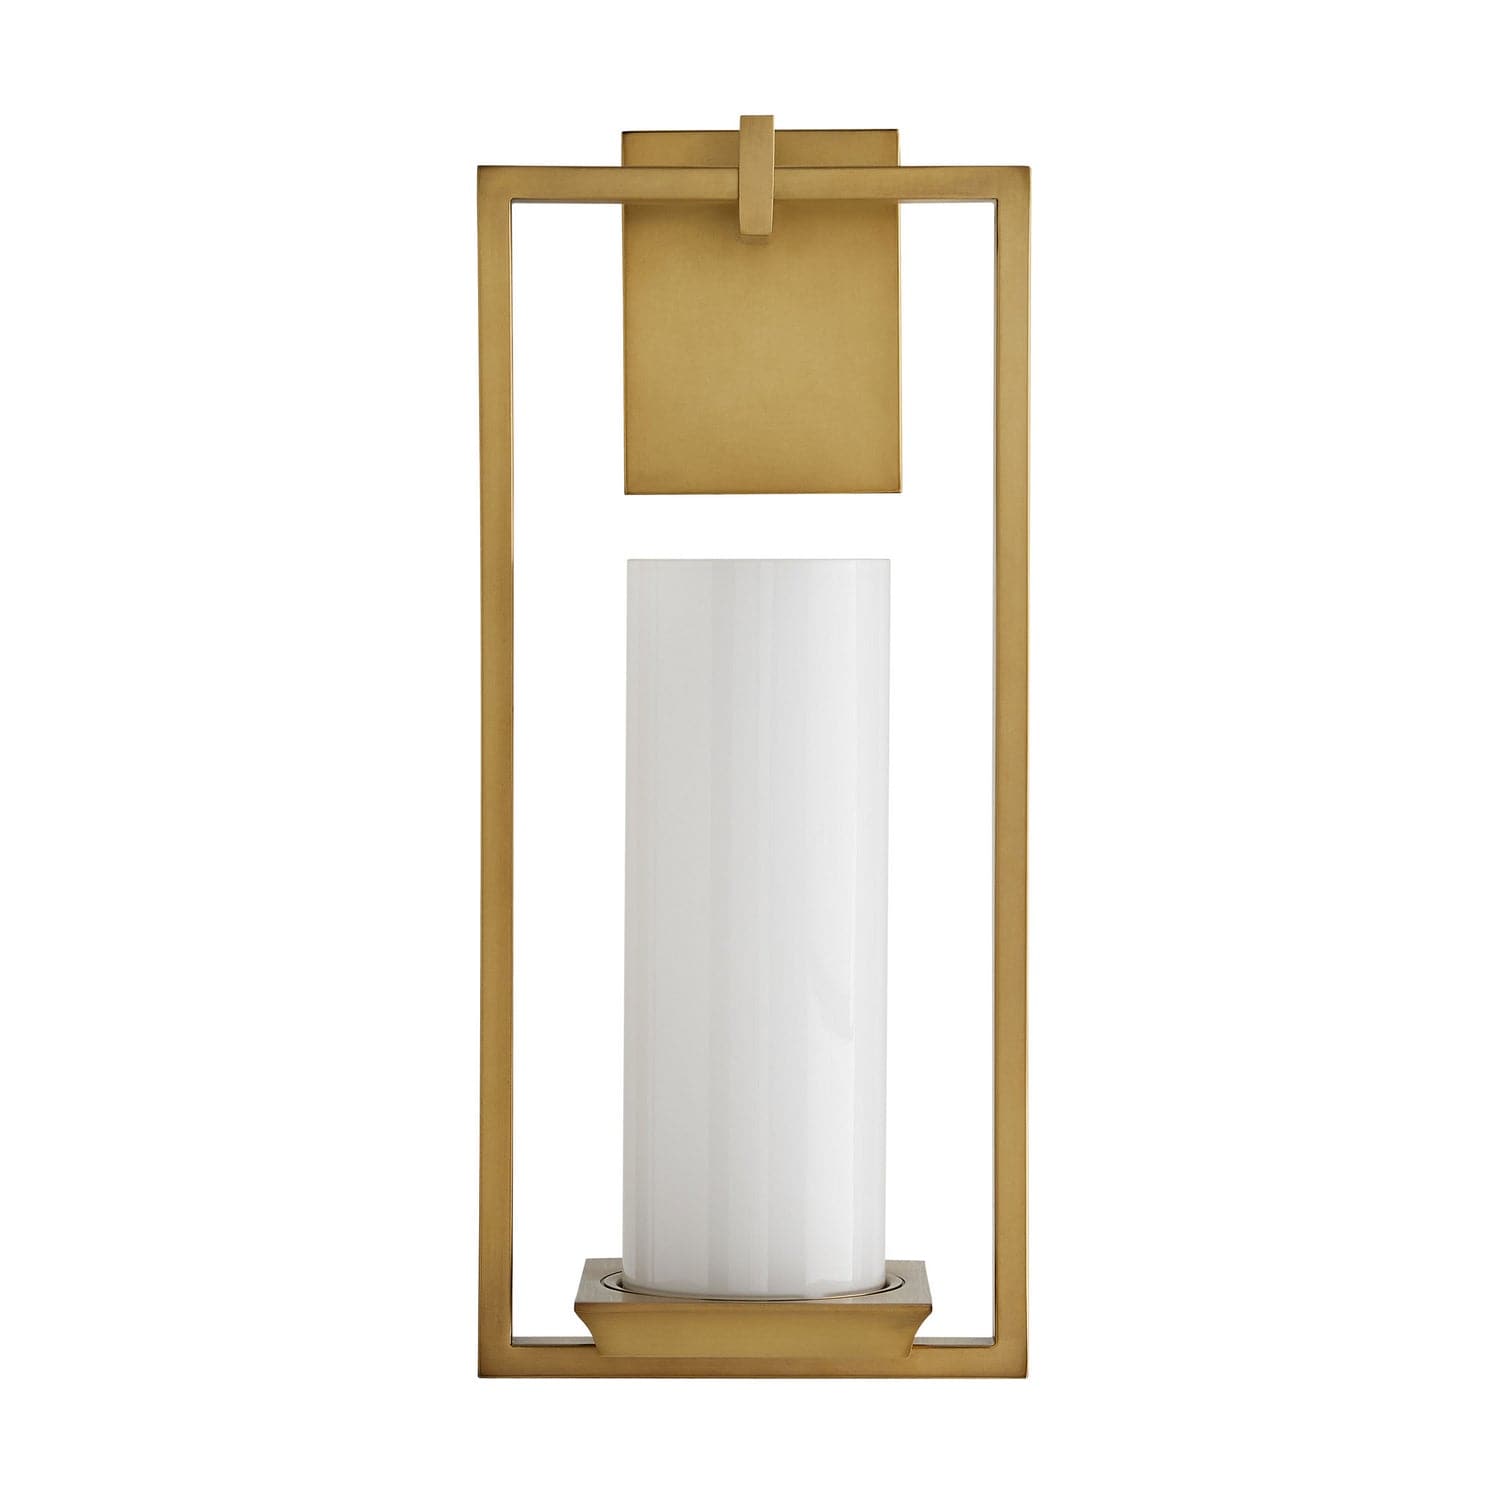 Arteriors - DB49013 - One Light Wall Sconce - Pillar - Antique Brass